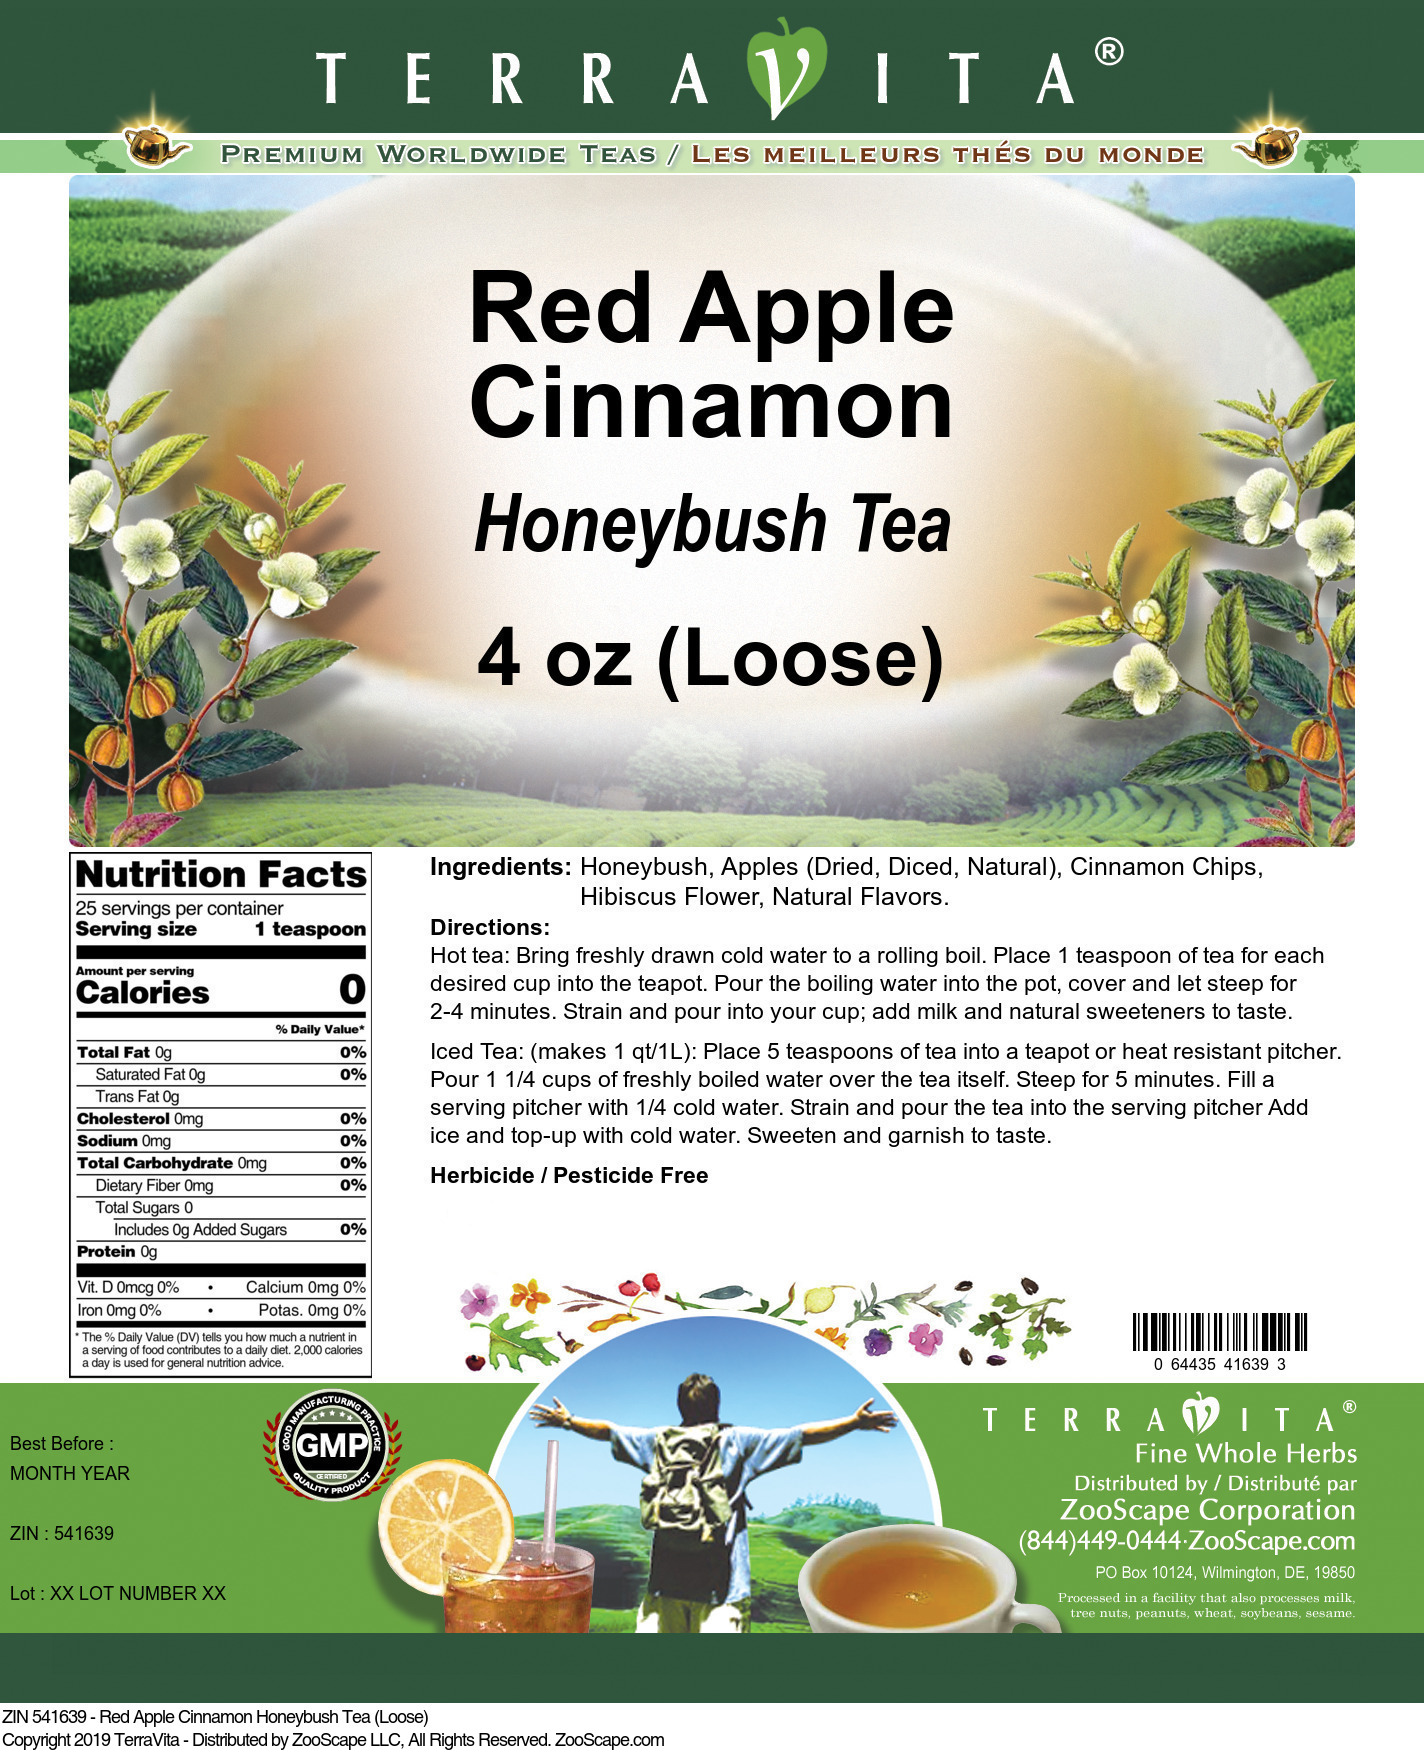 Red Apple Cinnamon Honeybush Tea (Loose) - Label